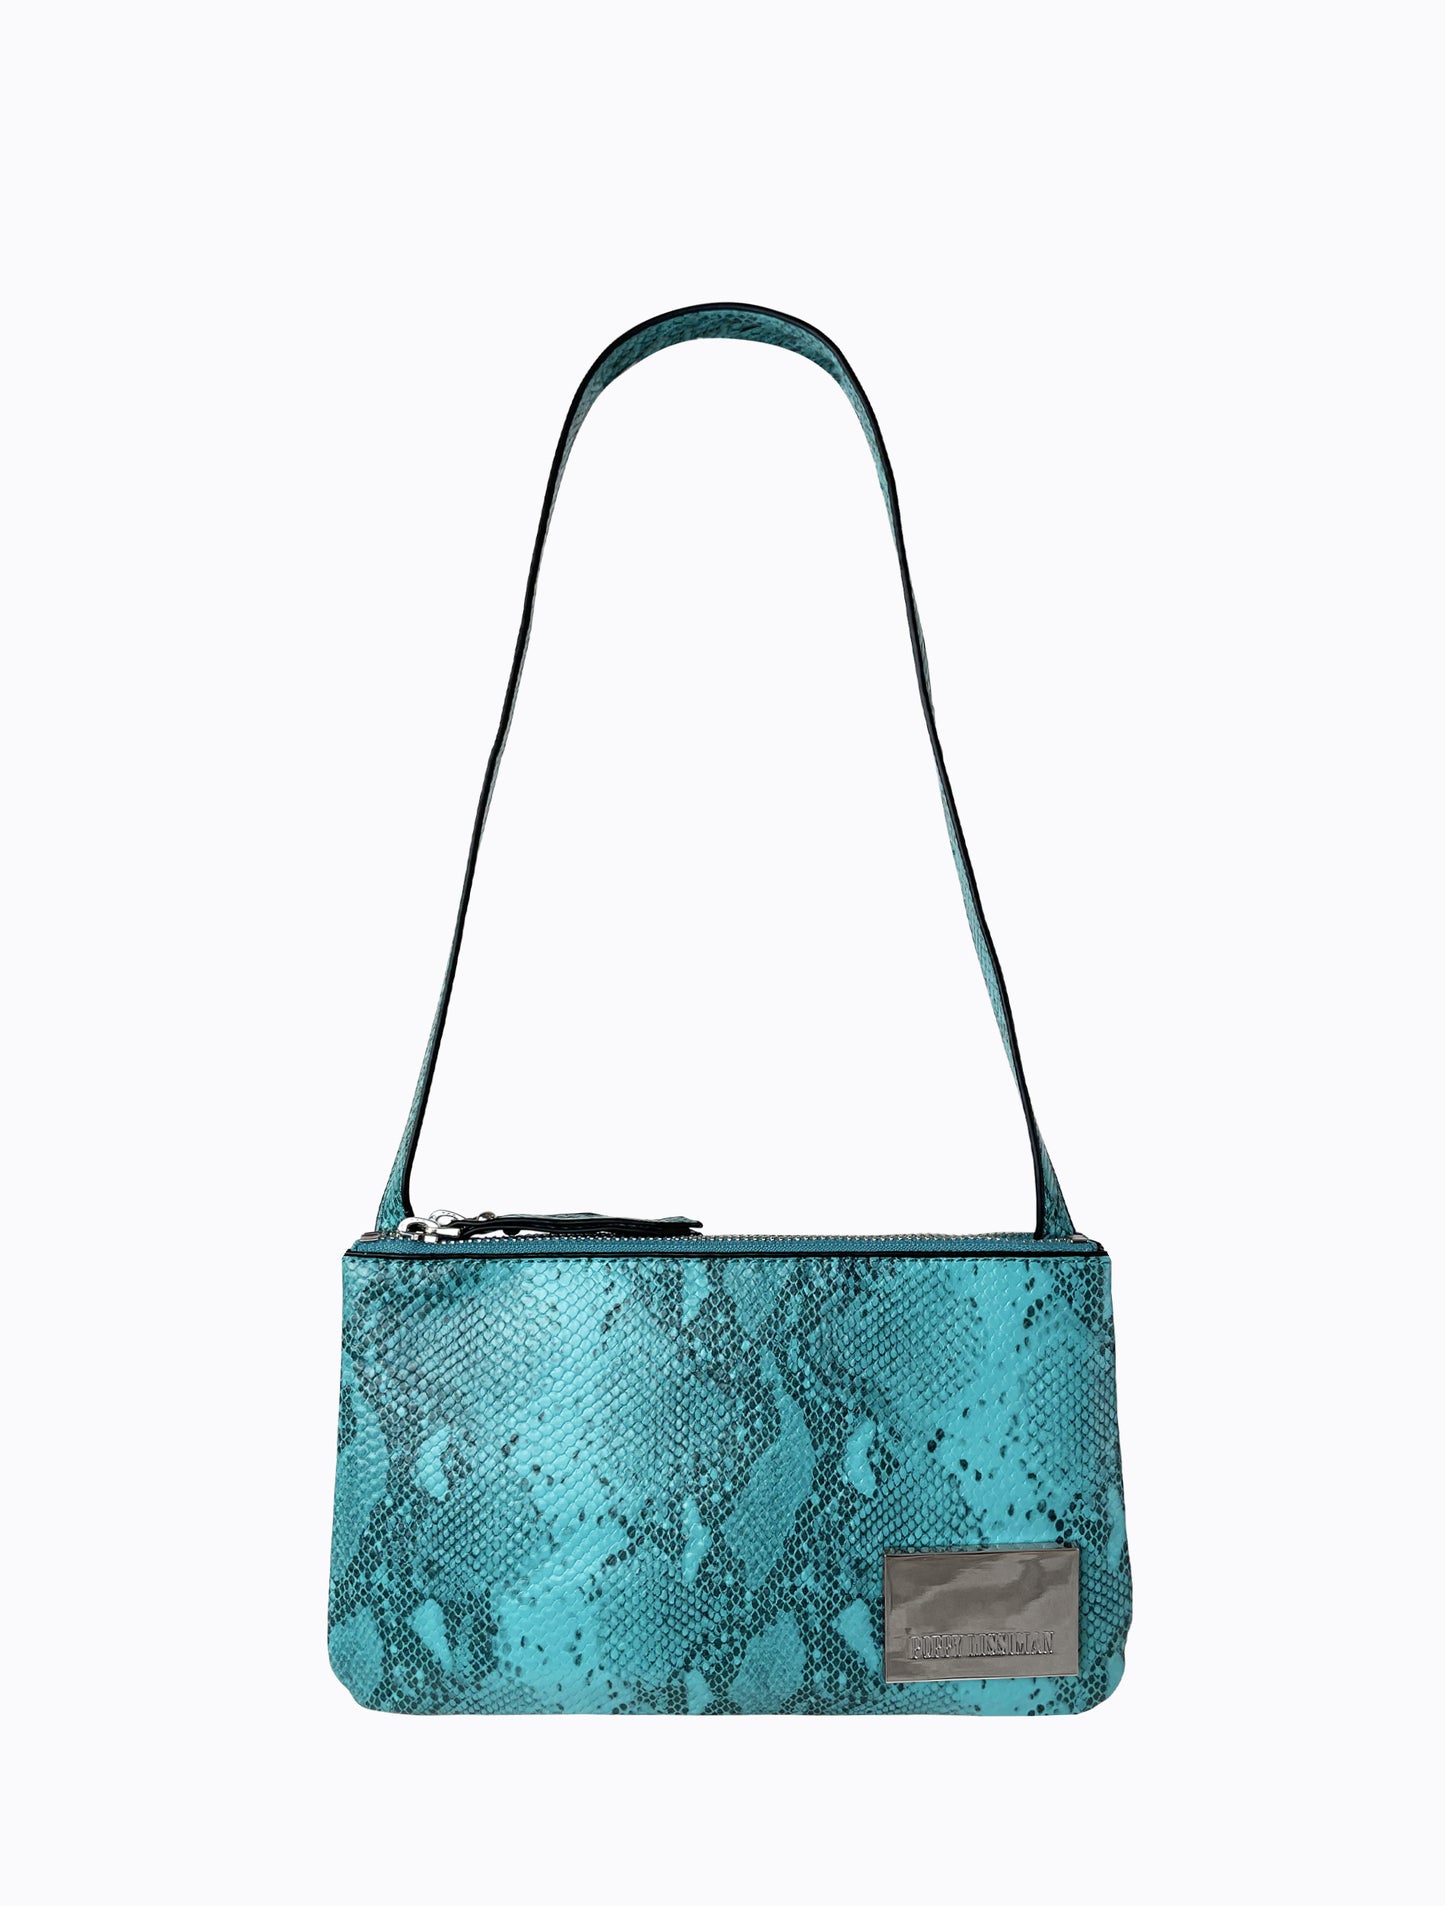 Junior Bag - Turquoise